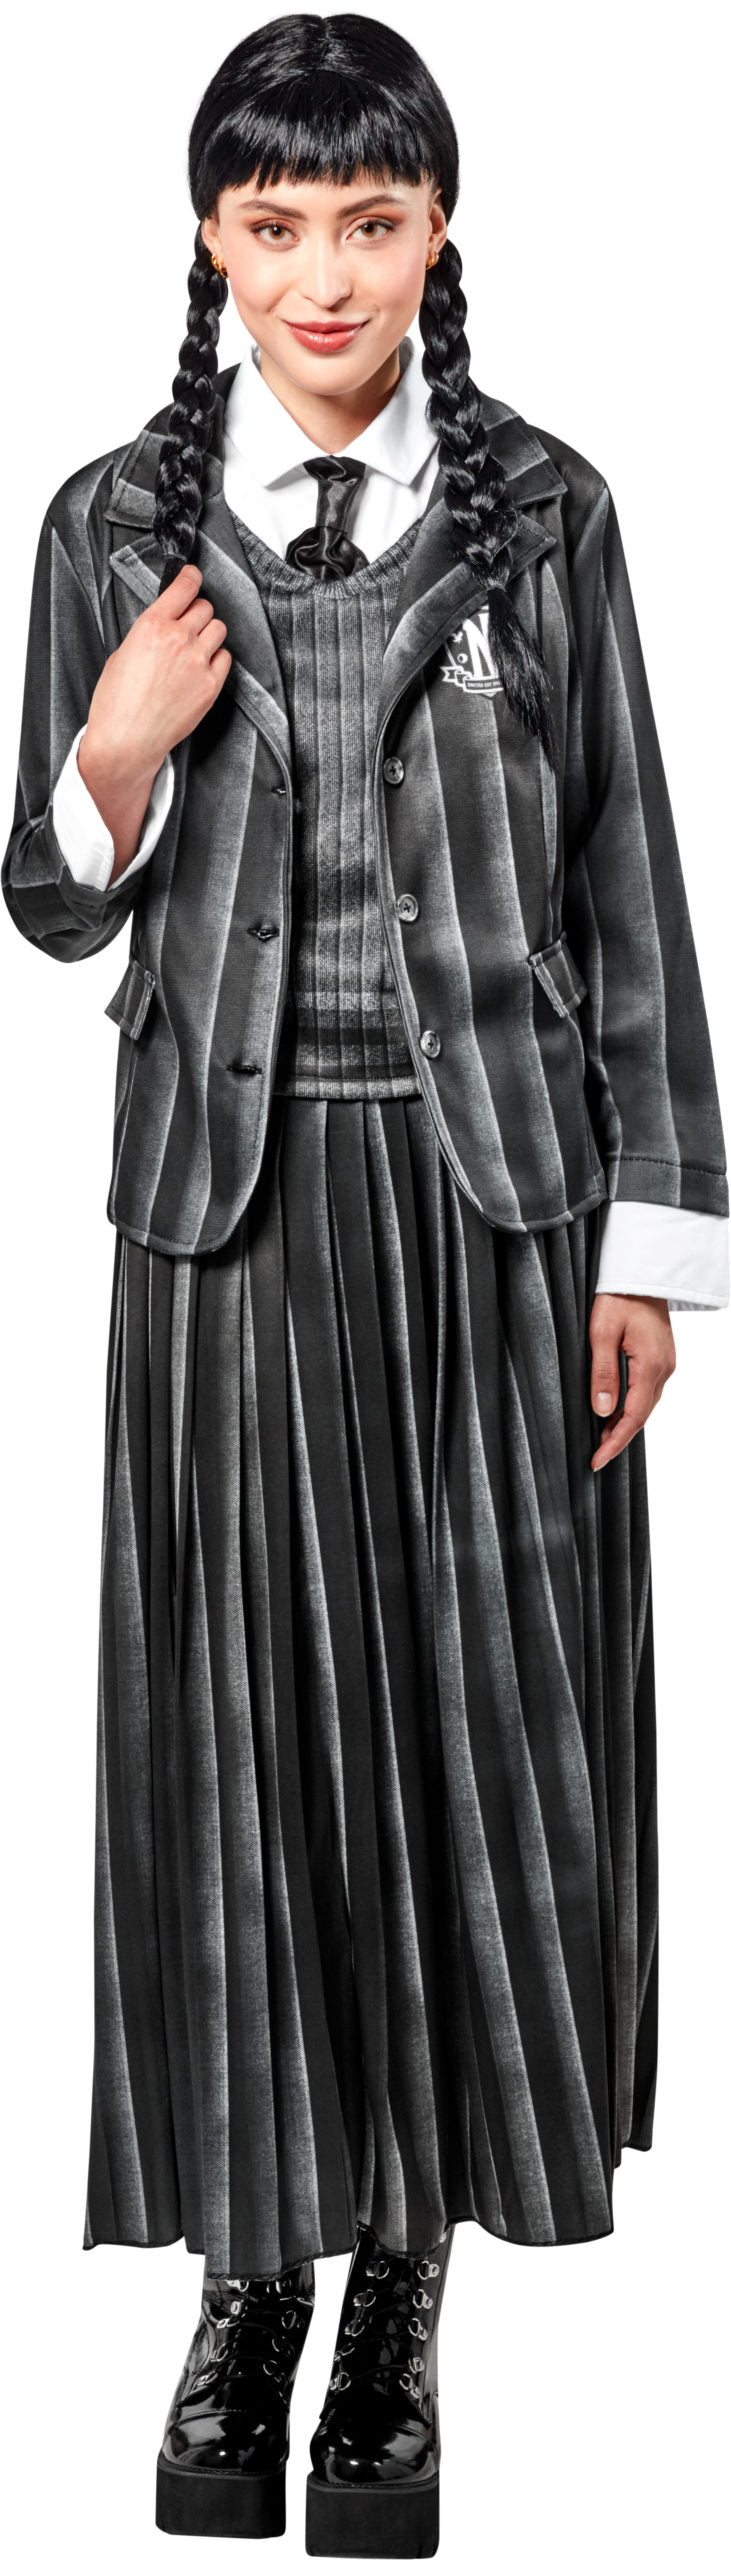 WEDNESDAY - Nevermore Academy Uniform Adult Costume